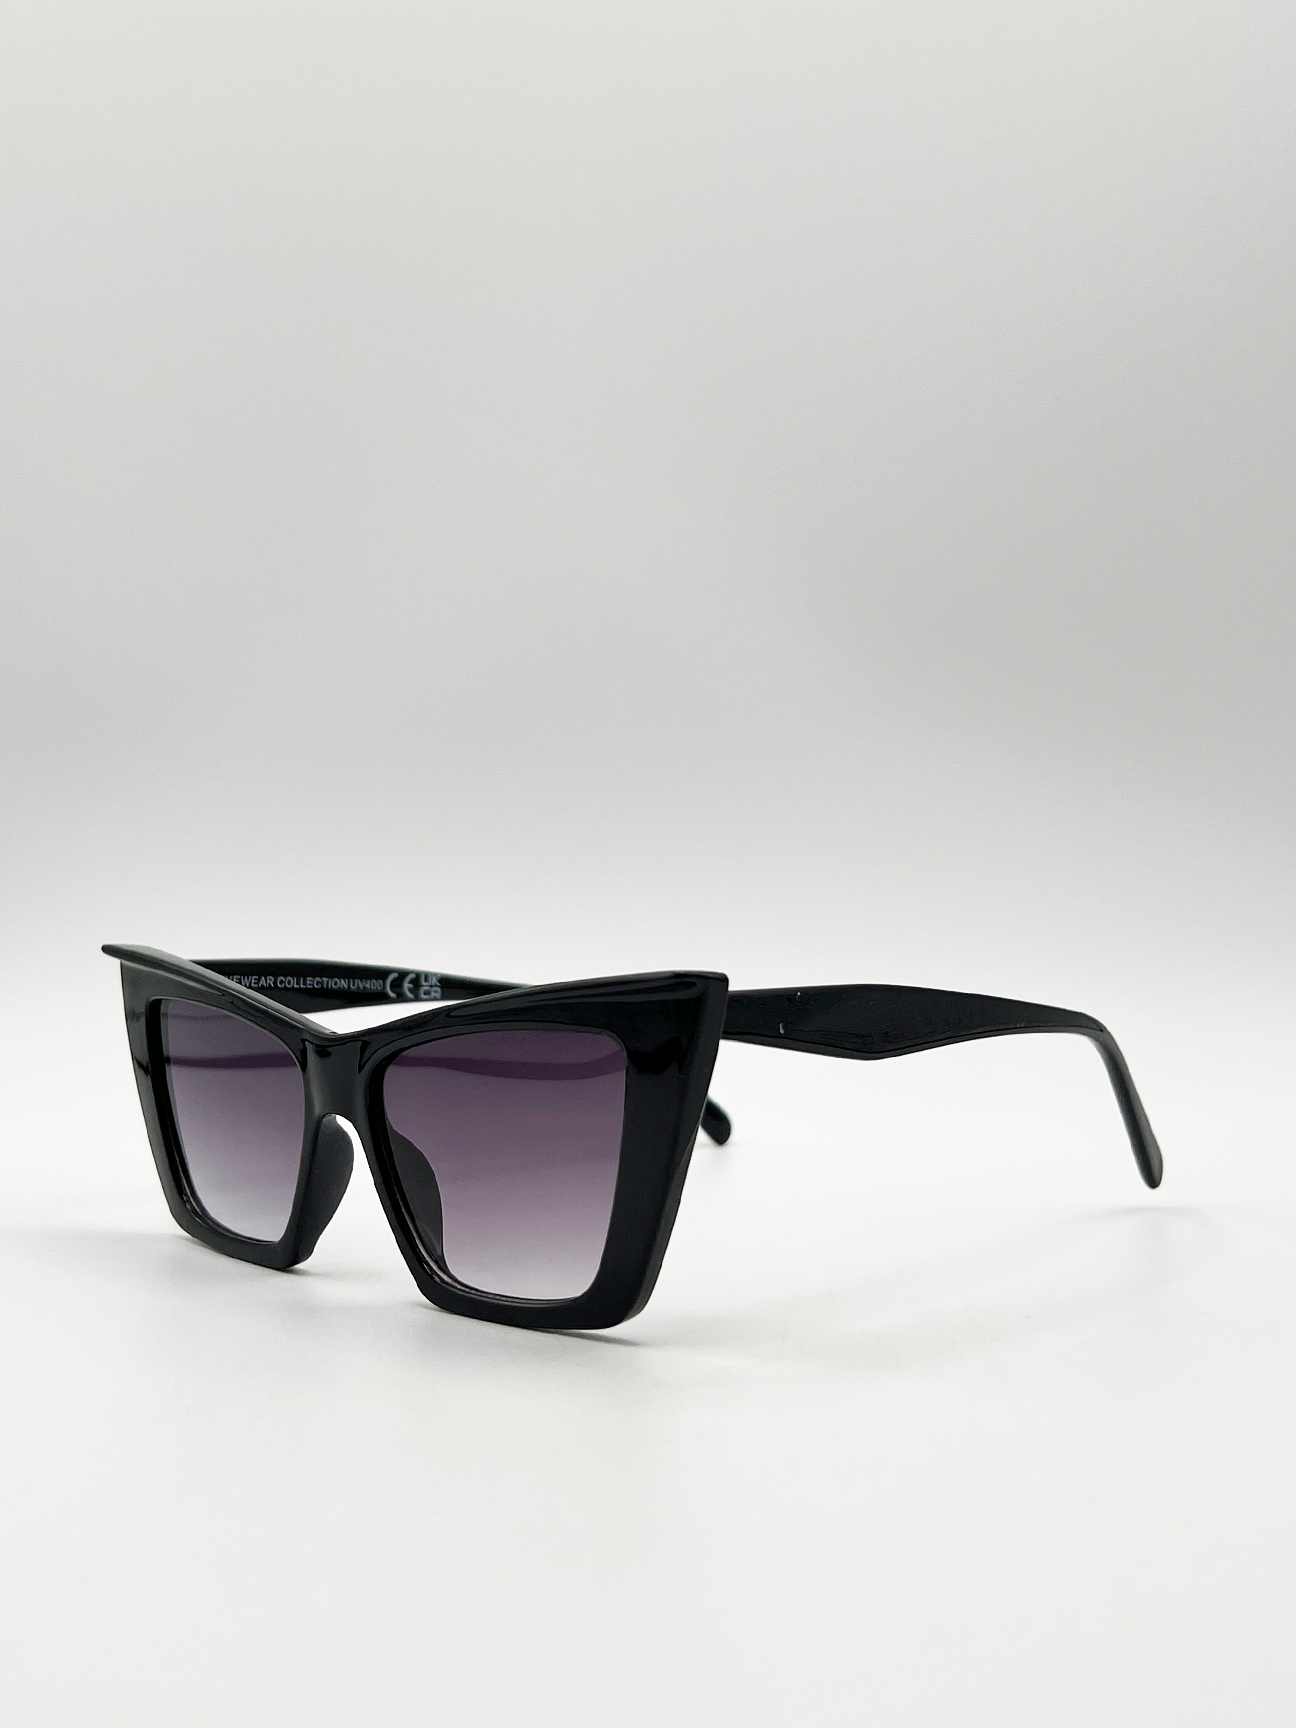 Oversized angular cateye sunglasses